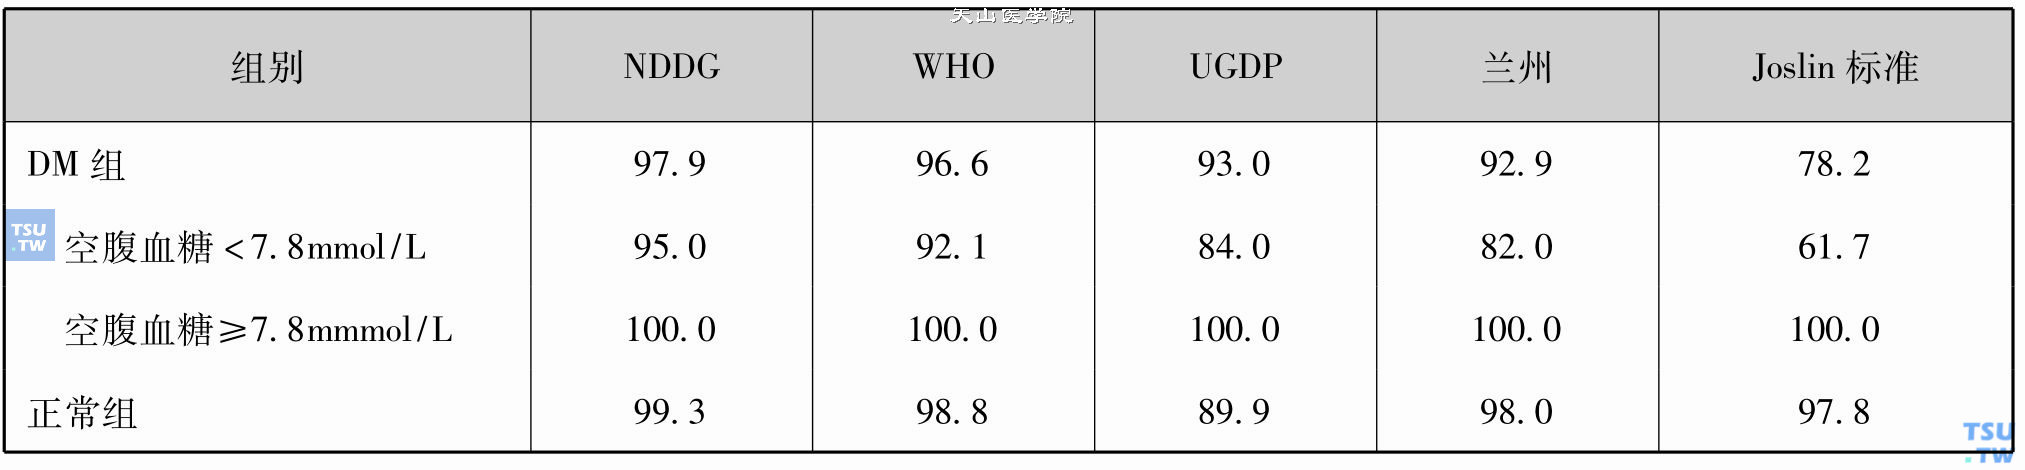 五种OGTT（口服葡萄糖耐量试验）标准与HbA1c（糖化血红蛋白）符合率的比较